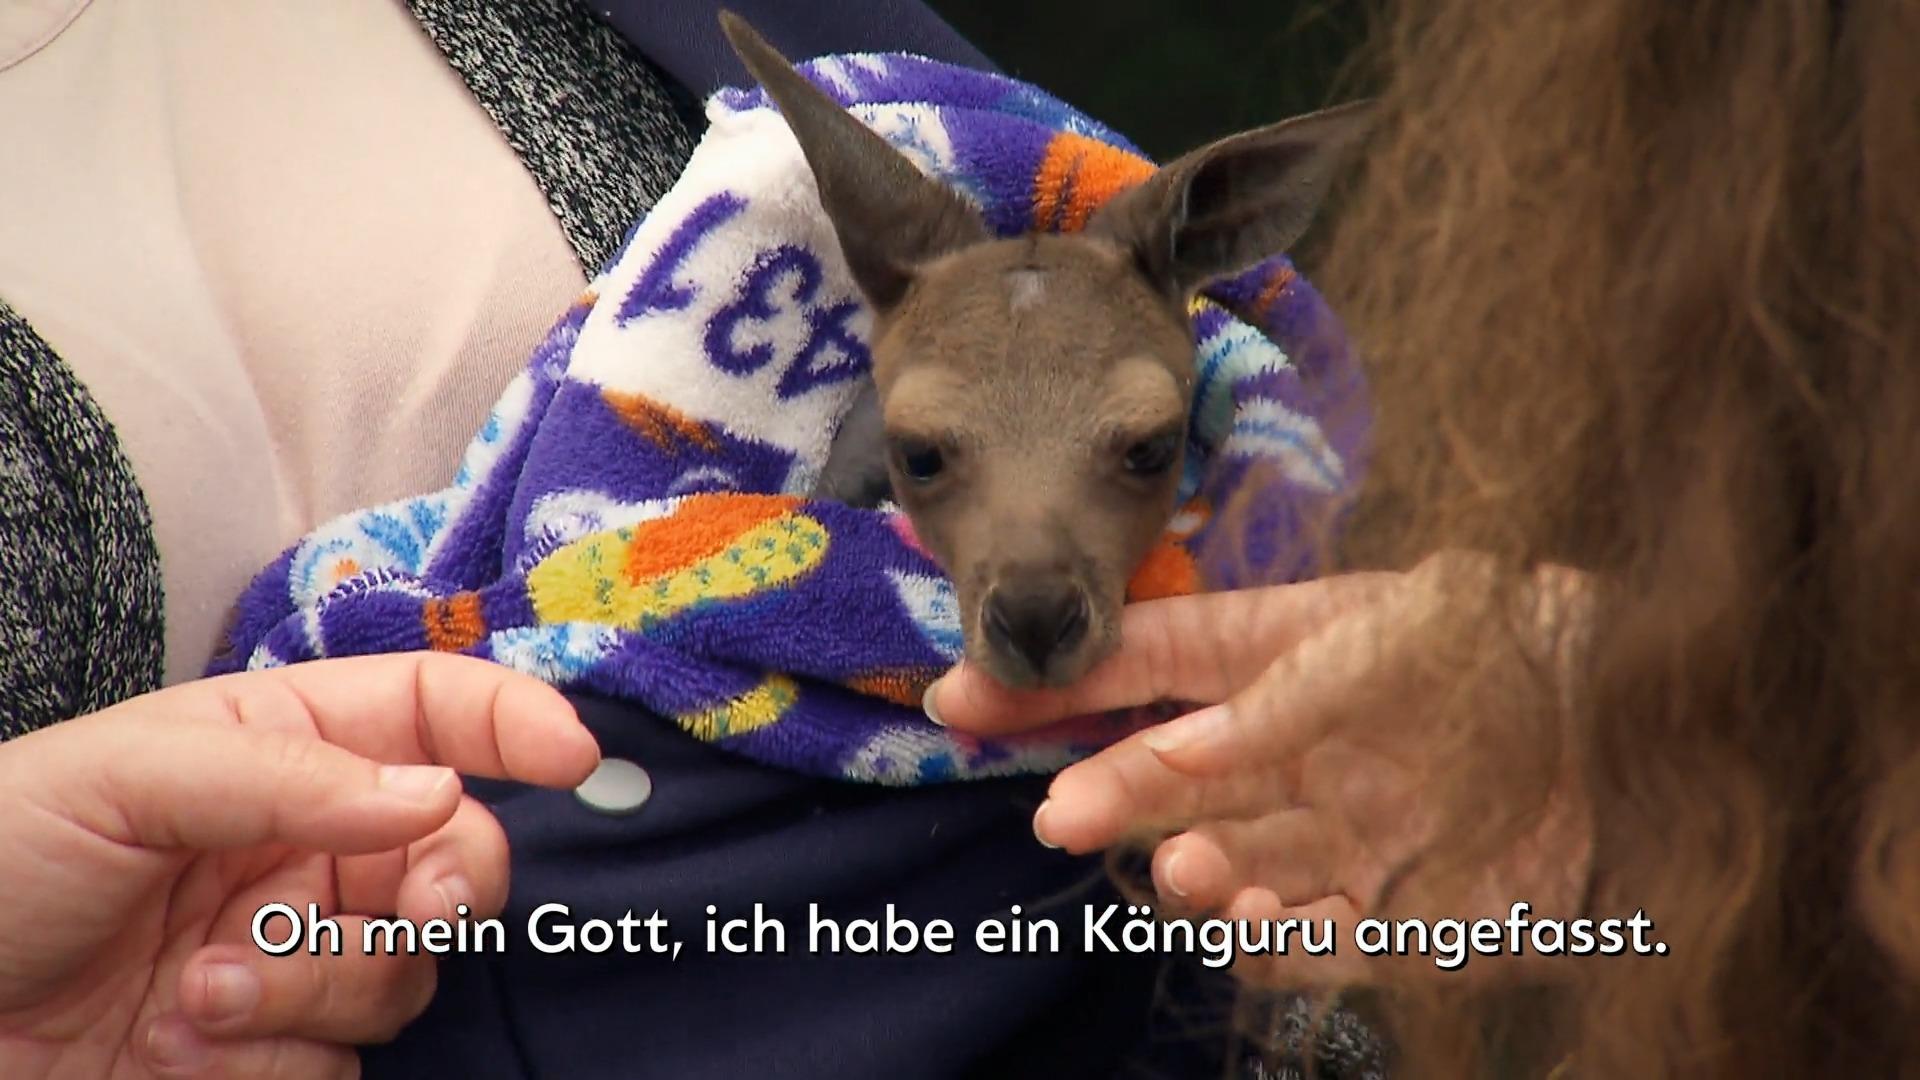 ¡Que lindo!  En Australia, el granjero Tom Cute tiene un alumbre bebé canguro sorpresa